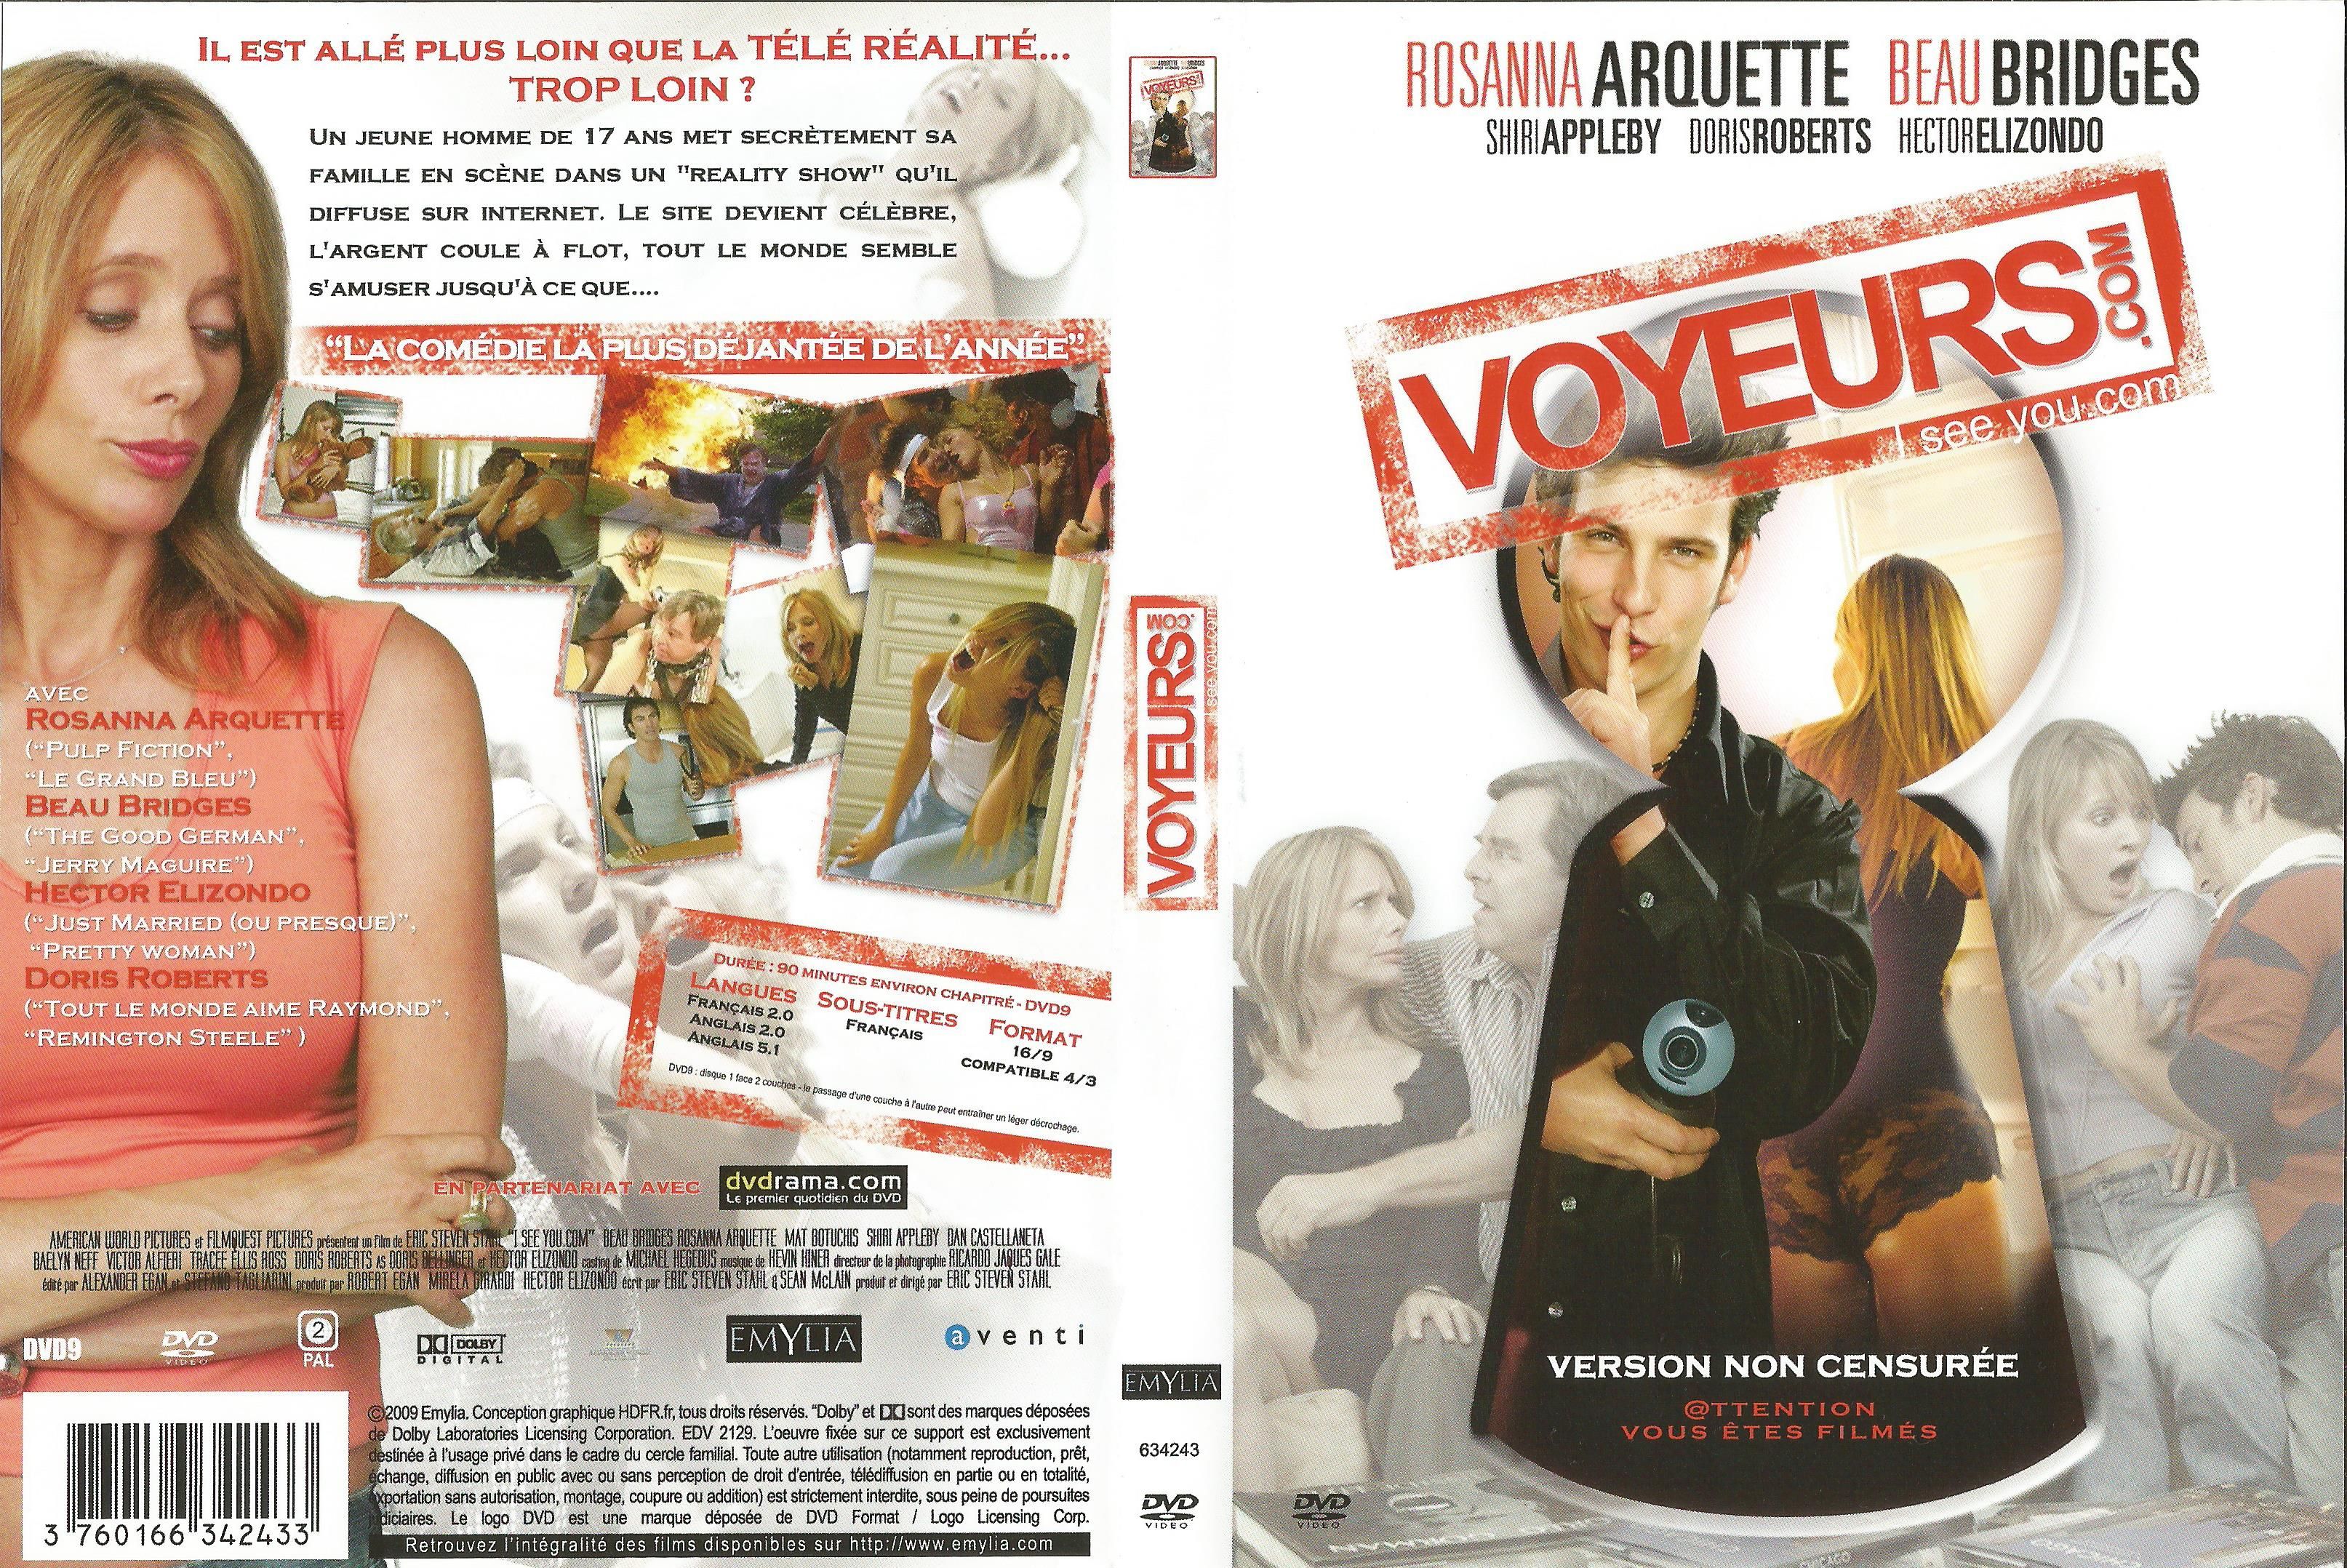 Jaquette DVD Voyeurs com v2